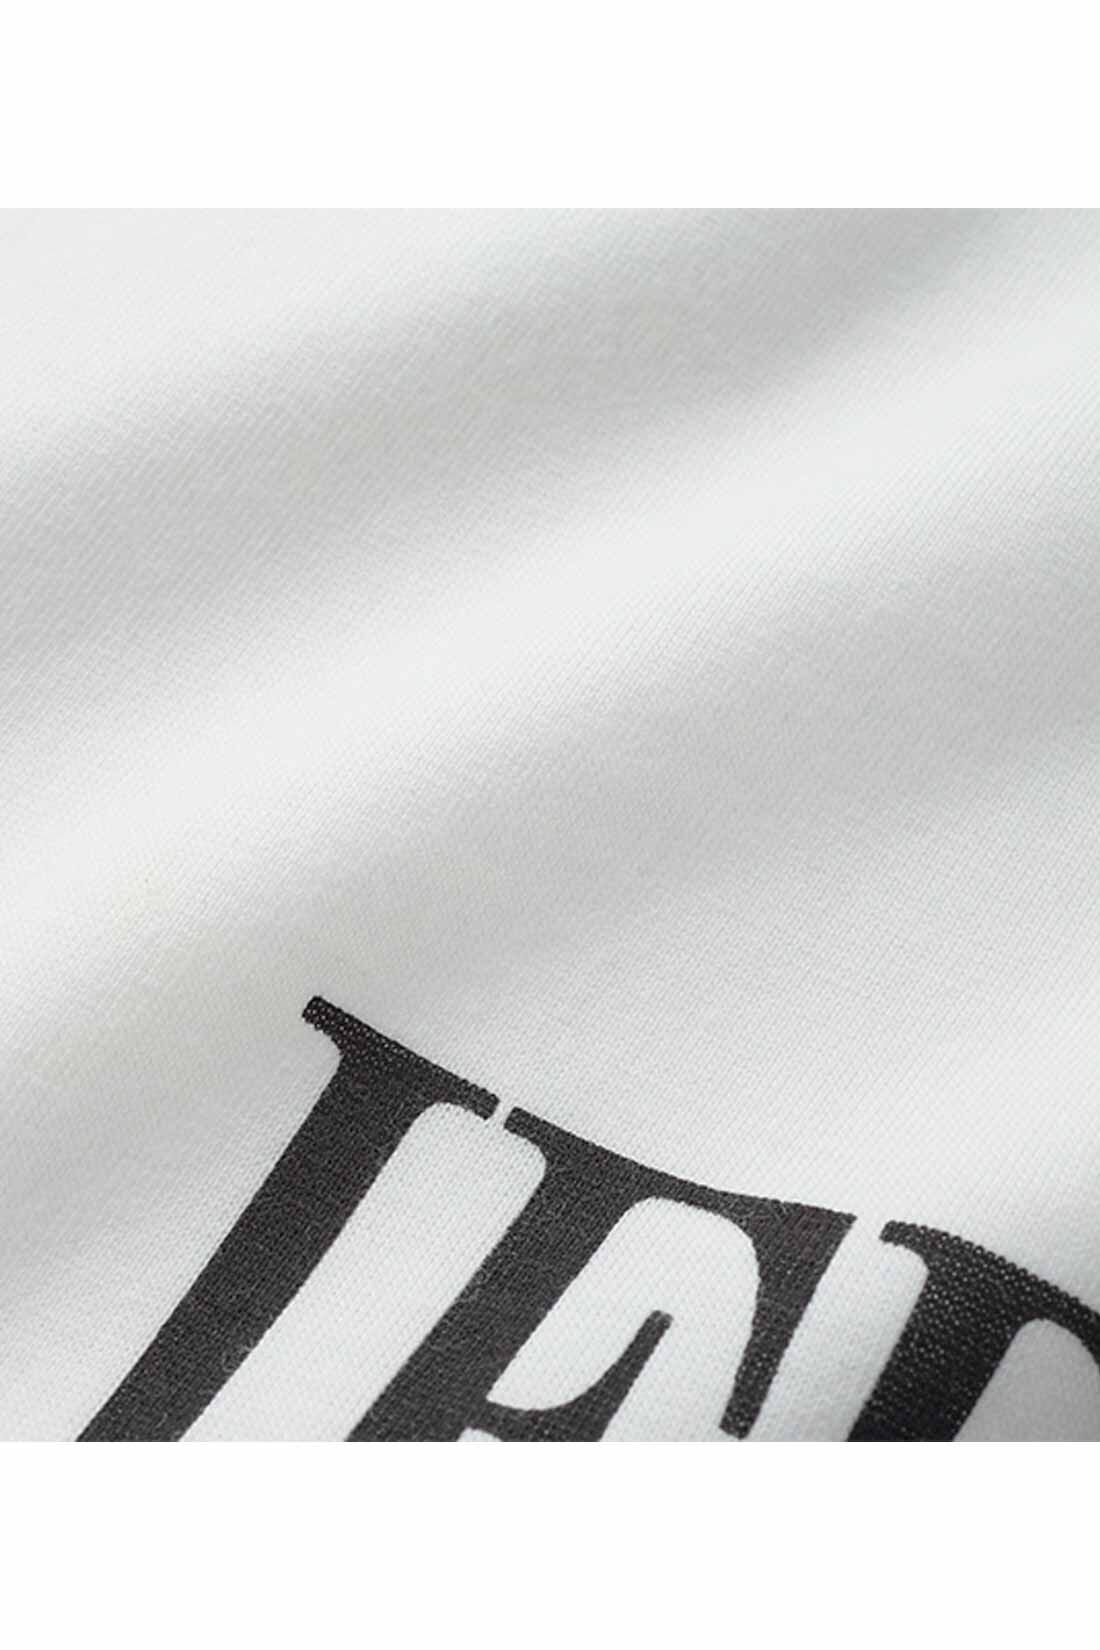 IEDIT|IEDIT[イディット]　こなれコーデがかなう ツイードベストと長袖ロゴTシャツのセット|ロンTは扱いやすい綿ポリエステルの天じくカットソーに、グラフィカルなIEDITのロゴをプリント。